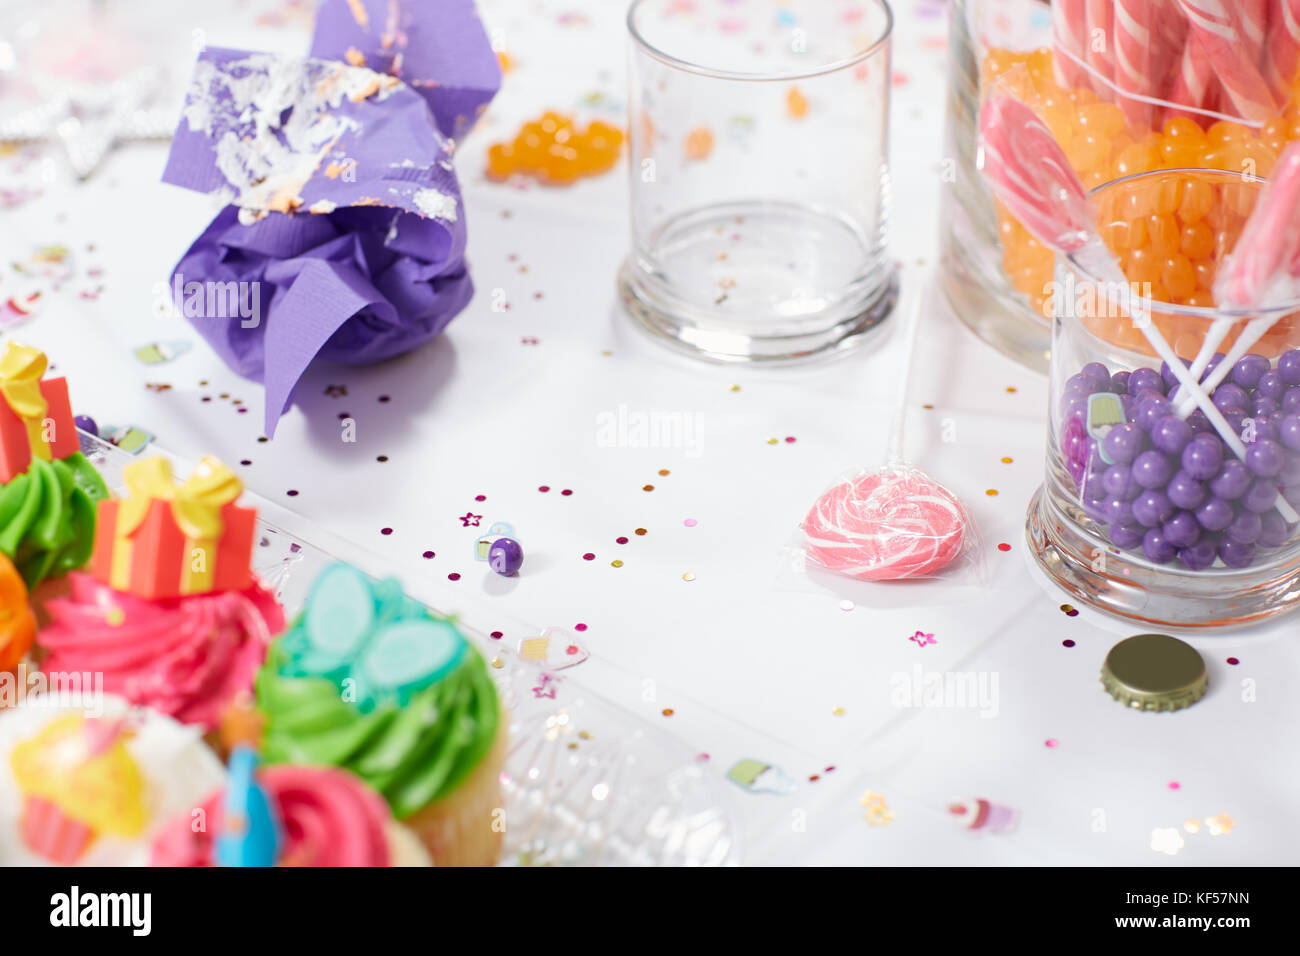 Table d'anniversaire pour les enfants avec des petits gâteaux glacés et des bonbons dans des bocaux en verre saupoudré de confettis dans une vue en gros plan Banque D'Images